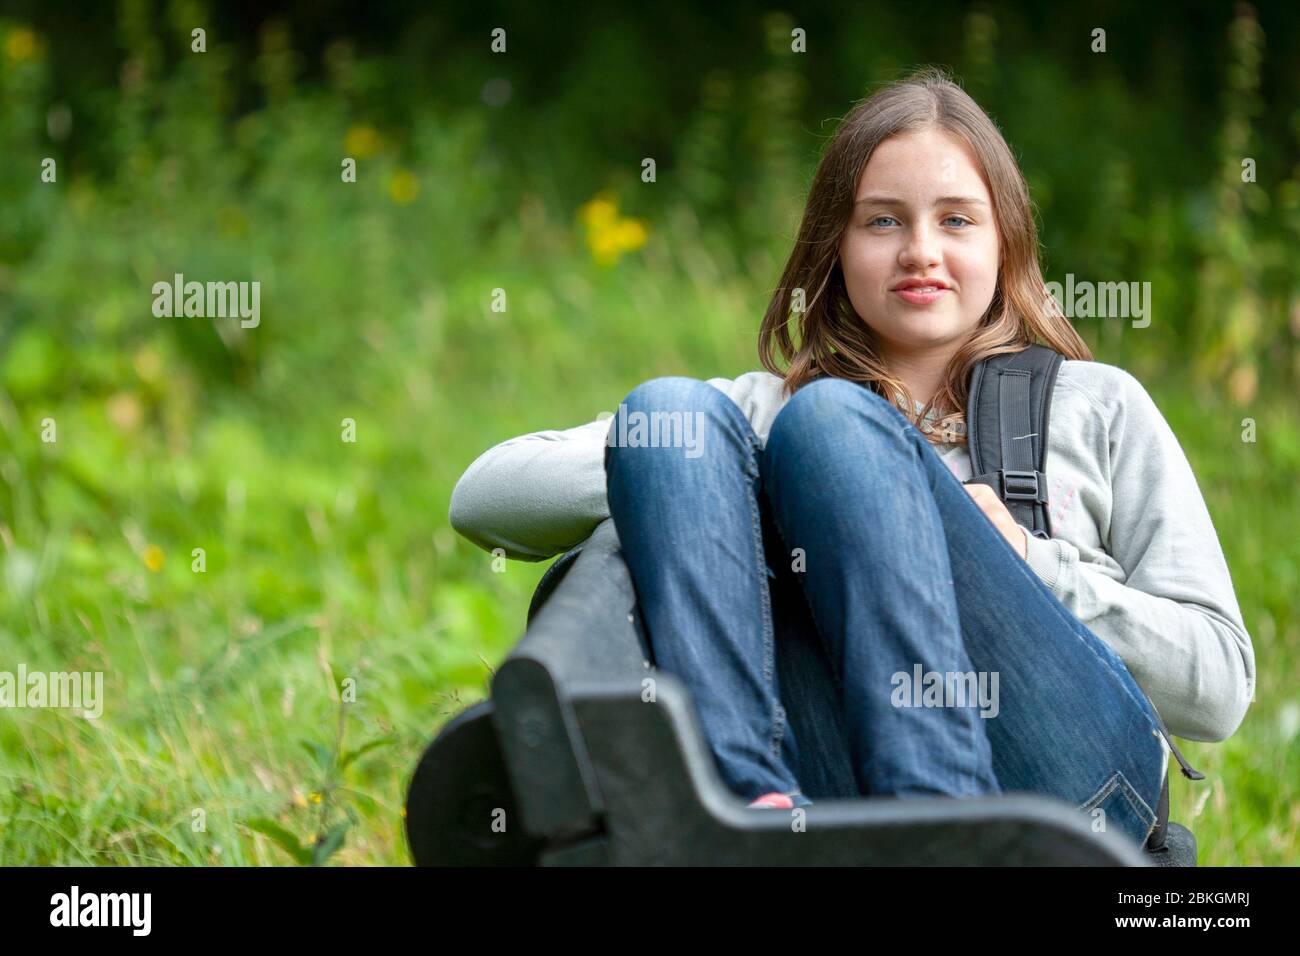 Un jeune adolescent s'est assis sur un banc dans la campagne anglaise, Lancashire, Angleterre, Royaume-Uni Banque D'Images